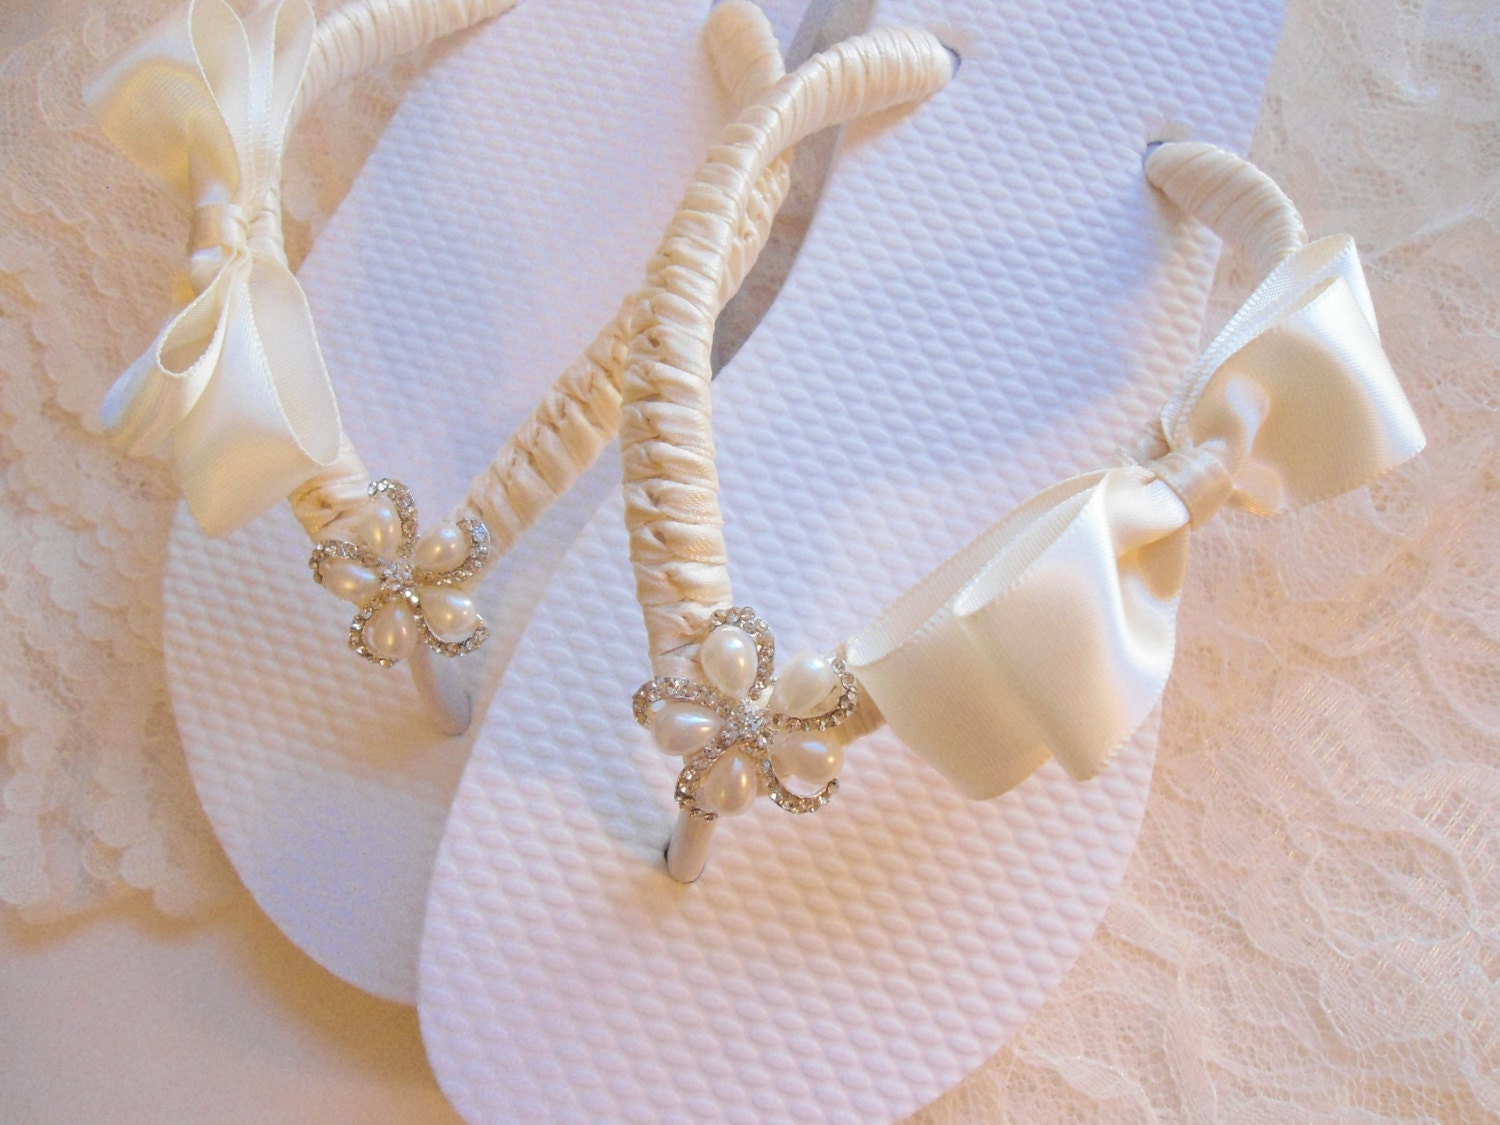 Embellished Flip Flops For Wedding